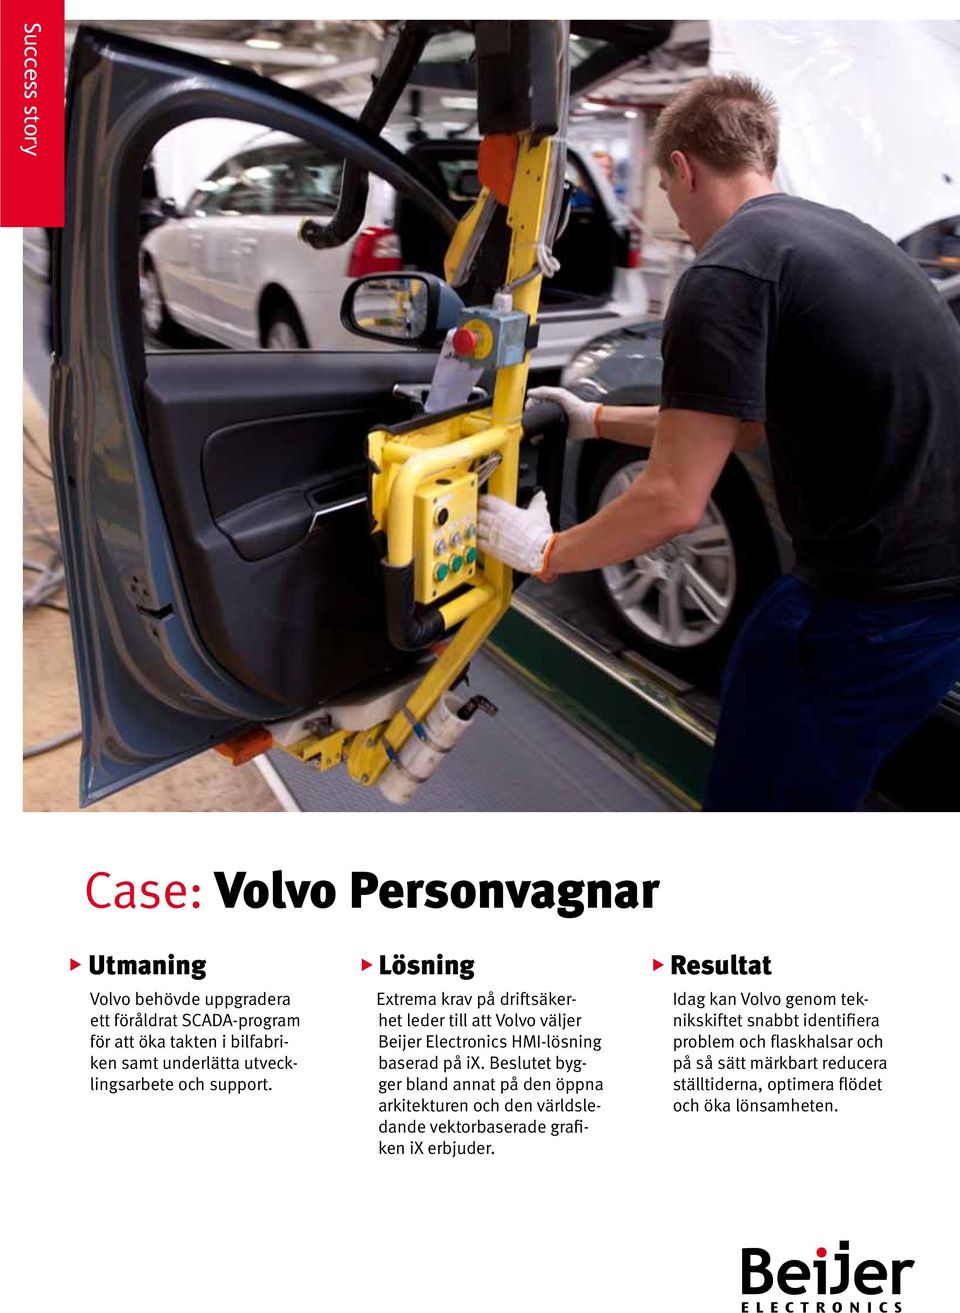 Lösning Extrema krav på driftsäkerhet leder till att Volvo väljer Beijer Electronics HMI-lösning baserad på ix.